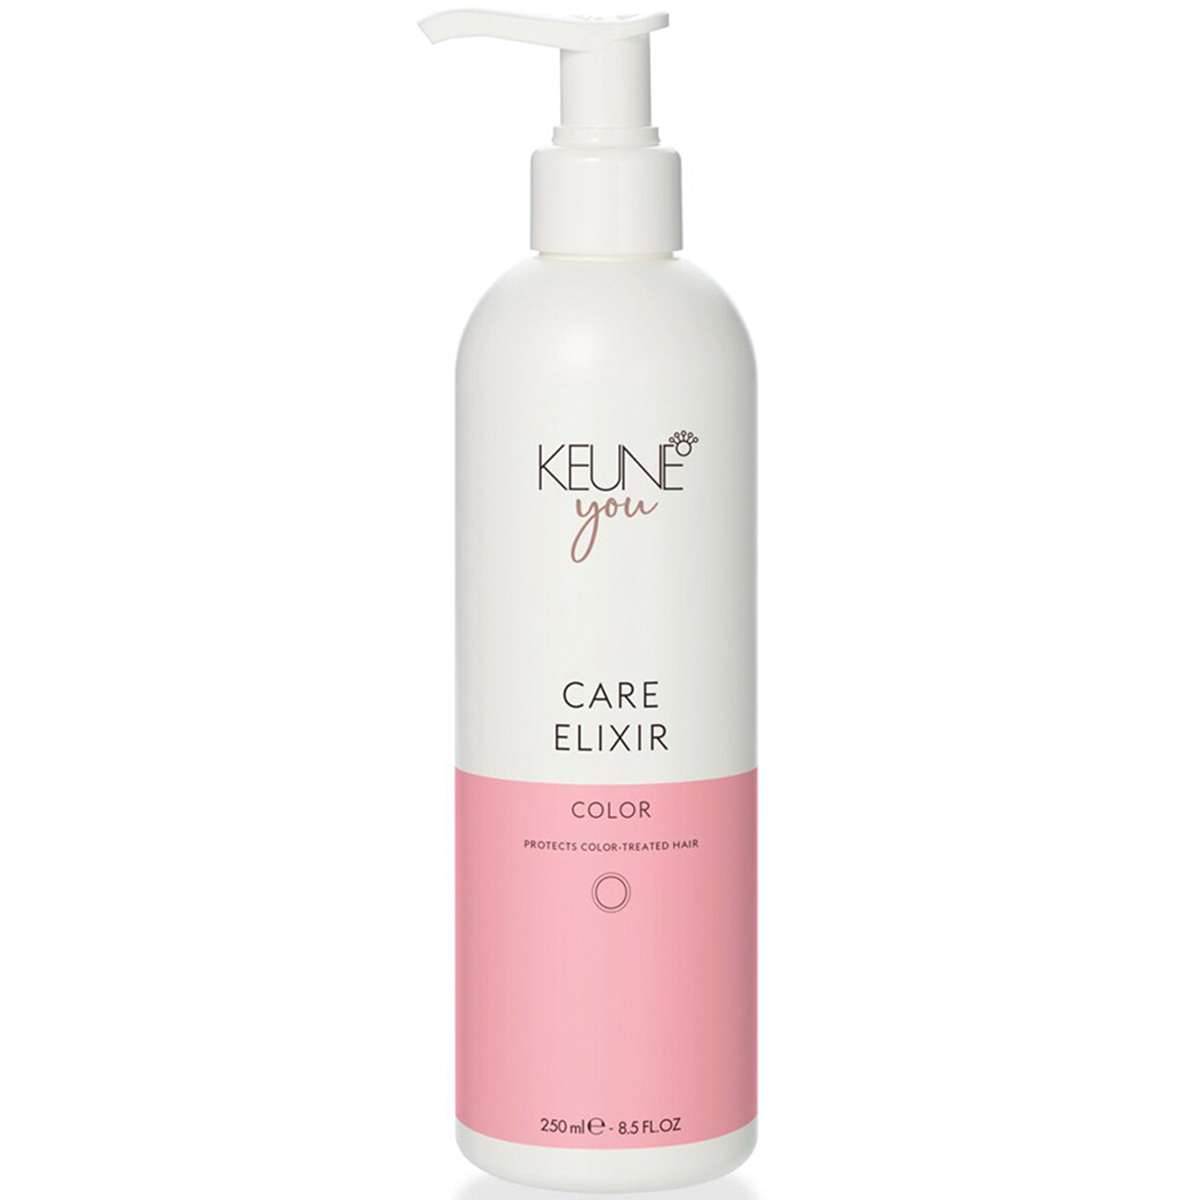 Keune Эликсир для окрашенных волос Защита цвета Care Elixir Color, 250 мл (Keune, You)